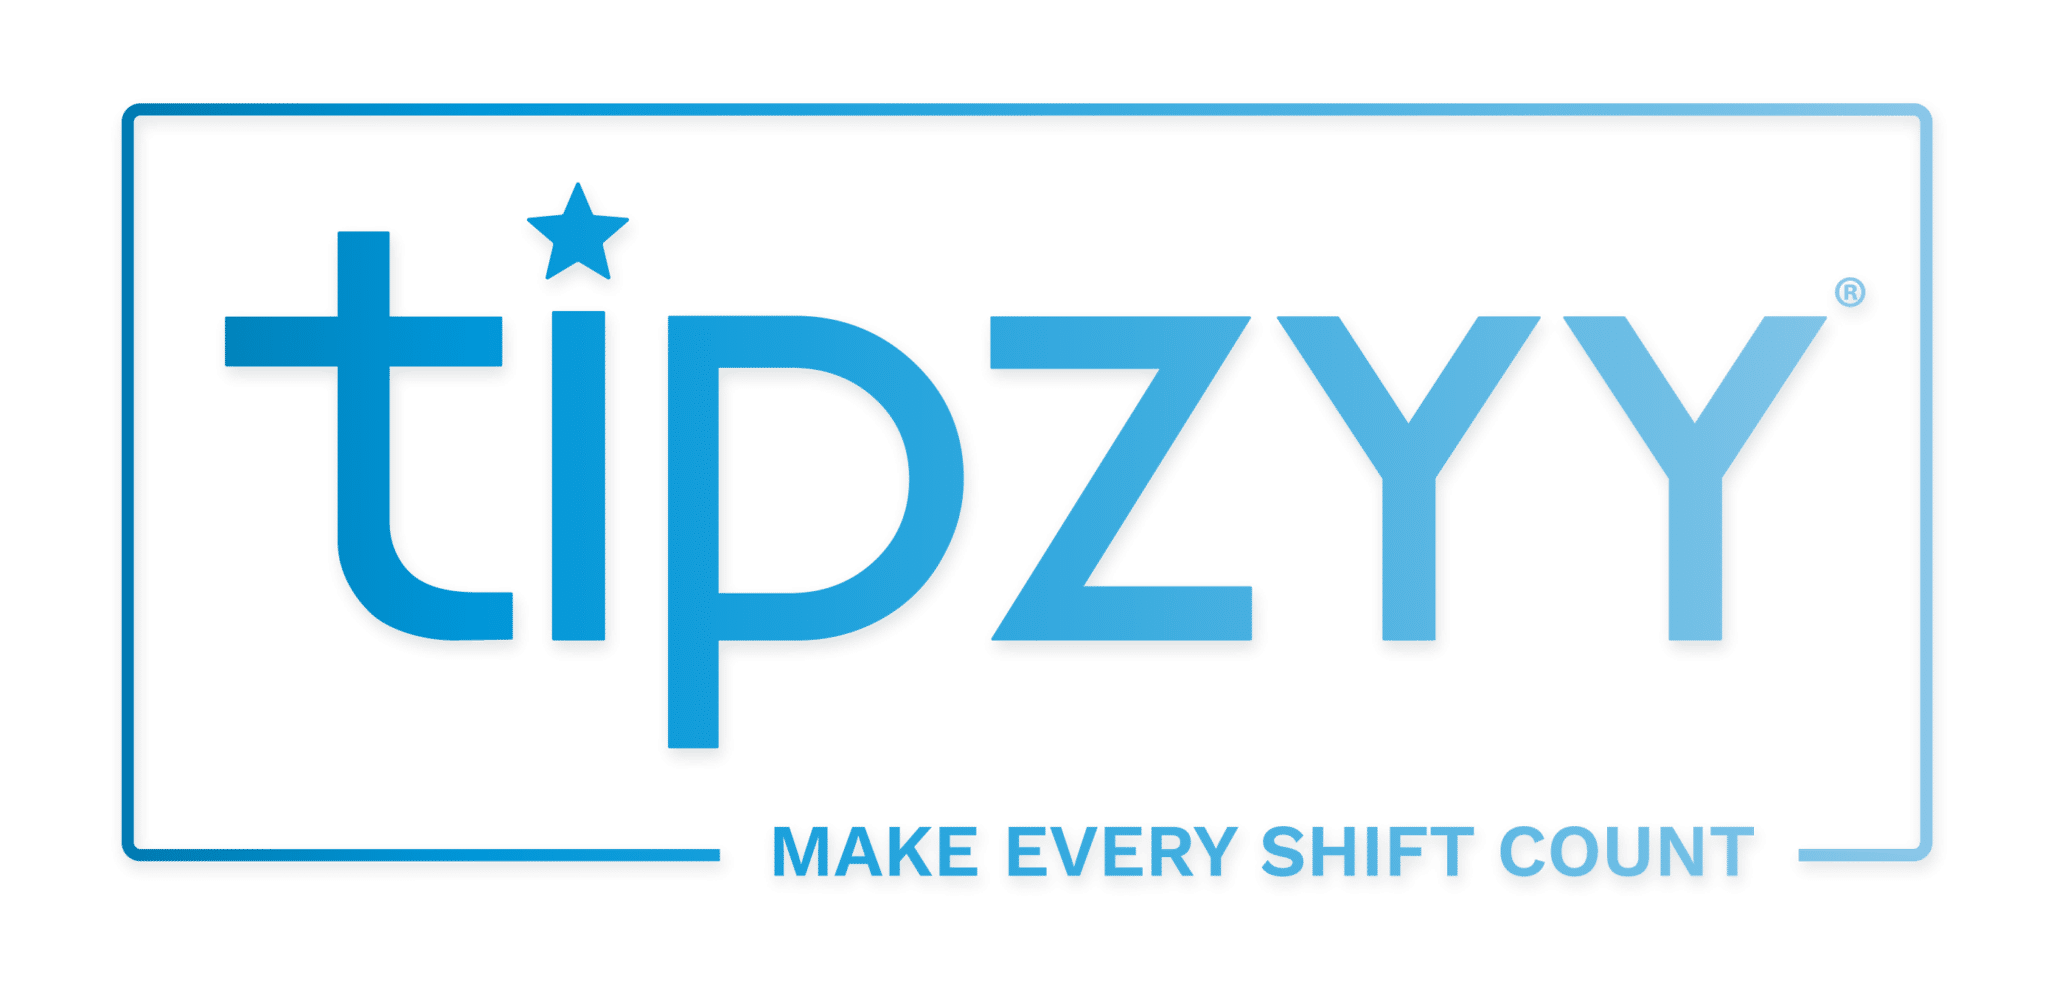 tipzyy logo